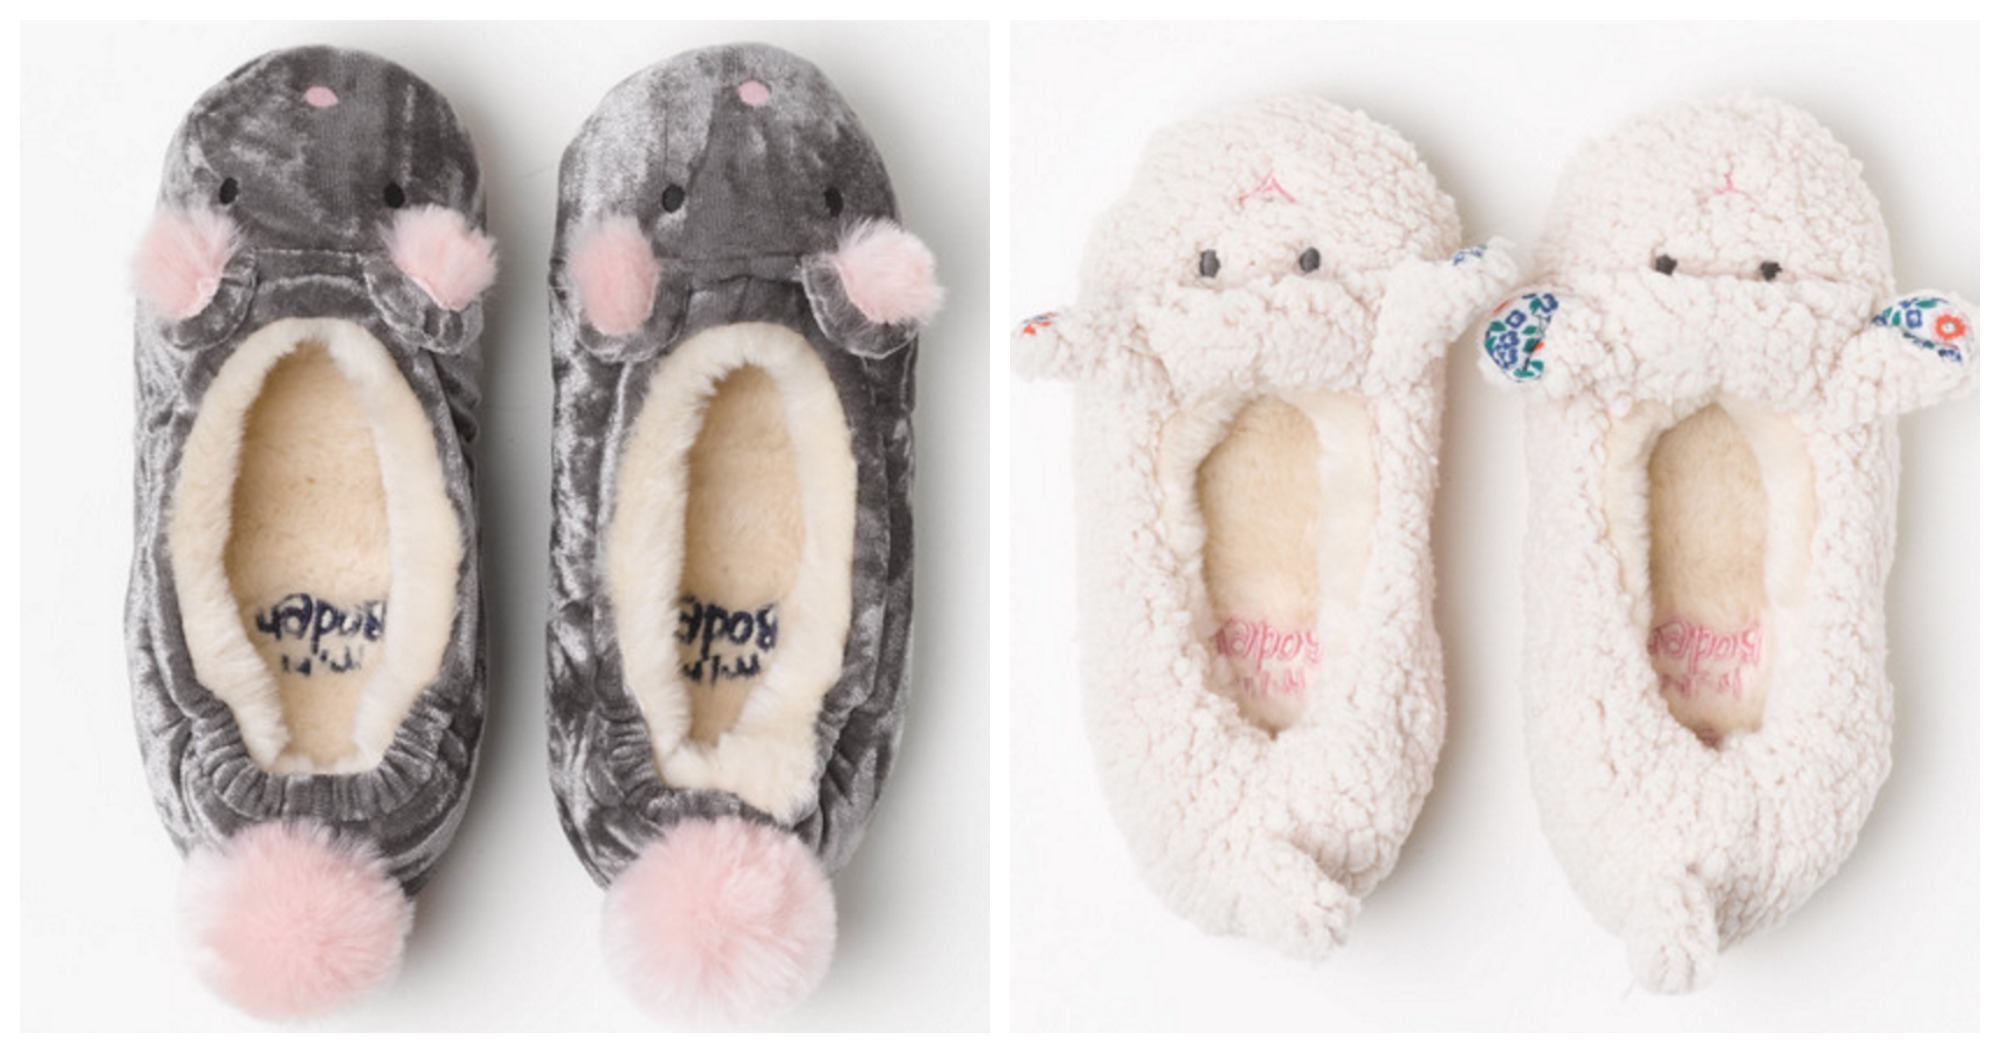 boden childrens slippers